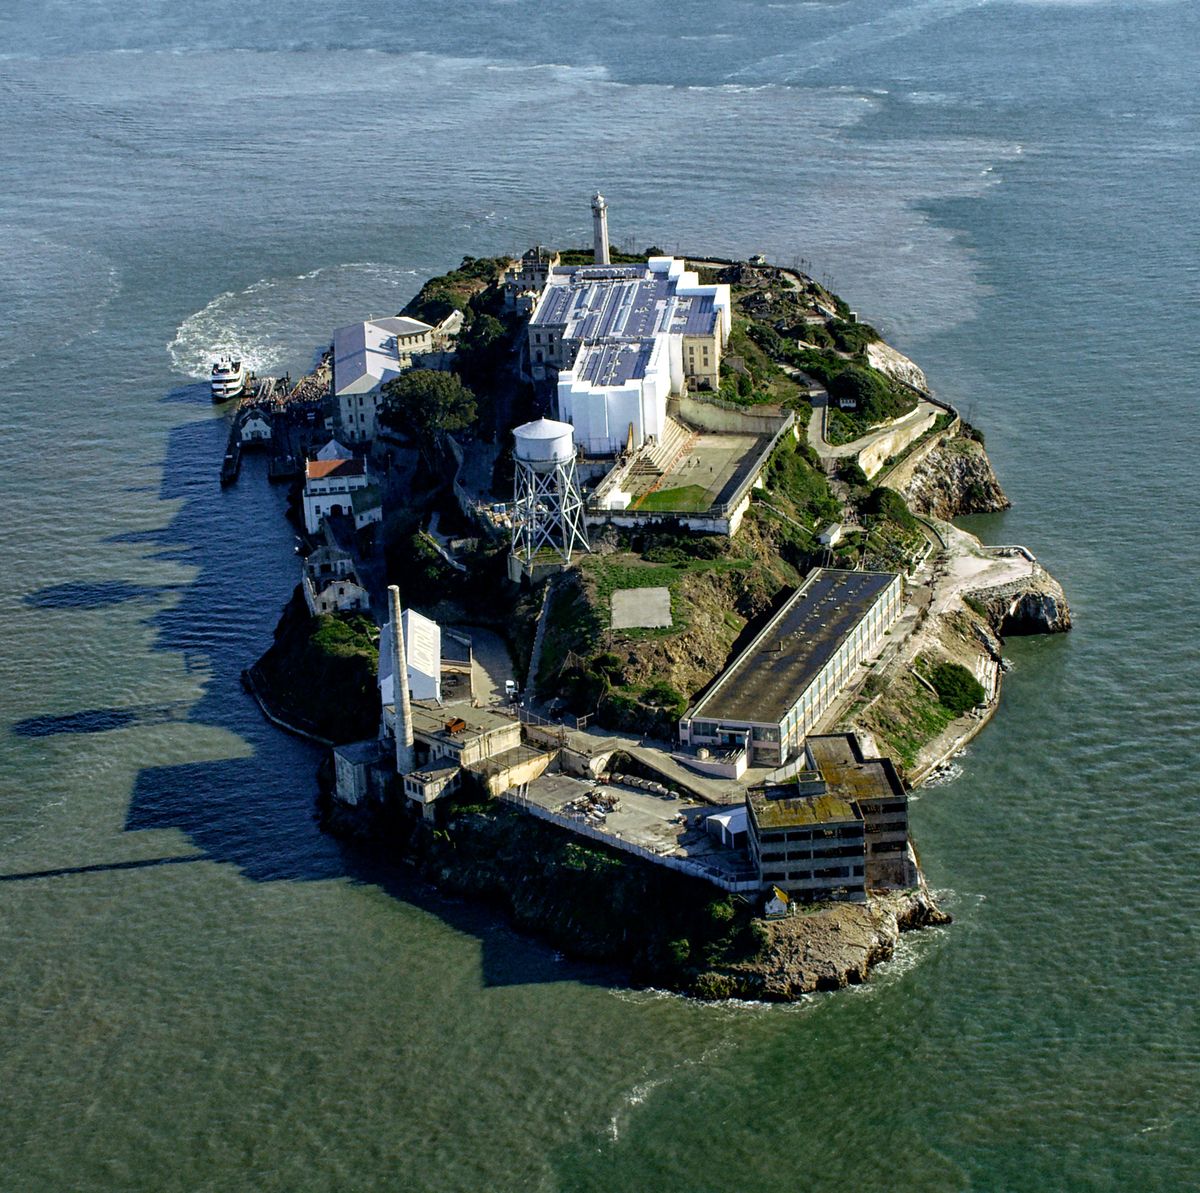 June 1962 Alcatraz escape attempt - Wikipedia